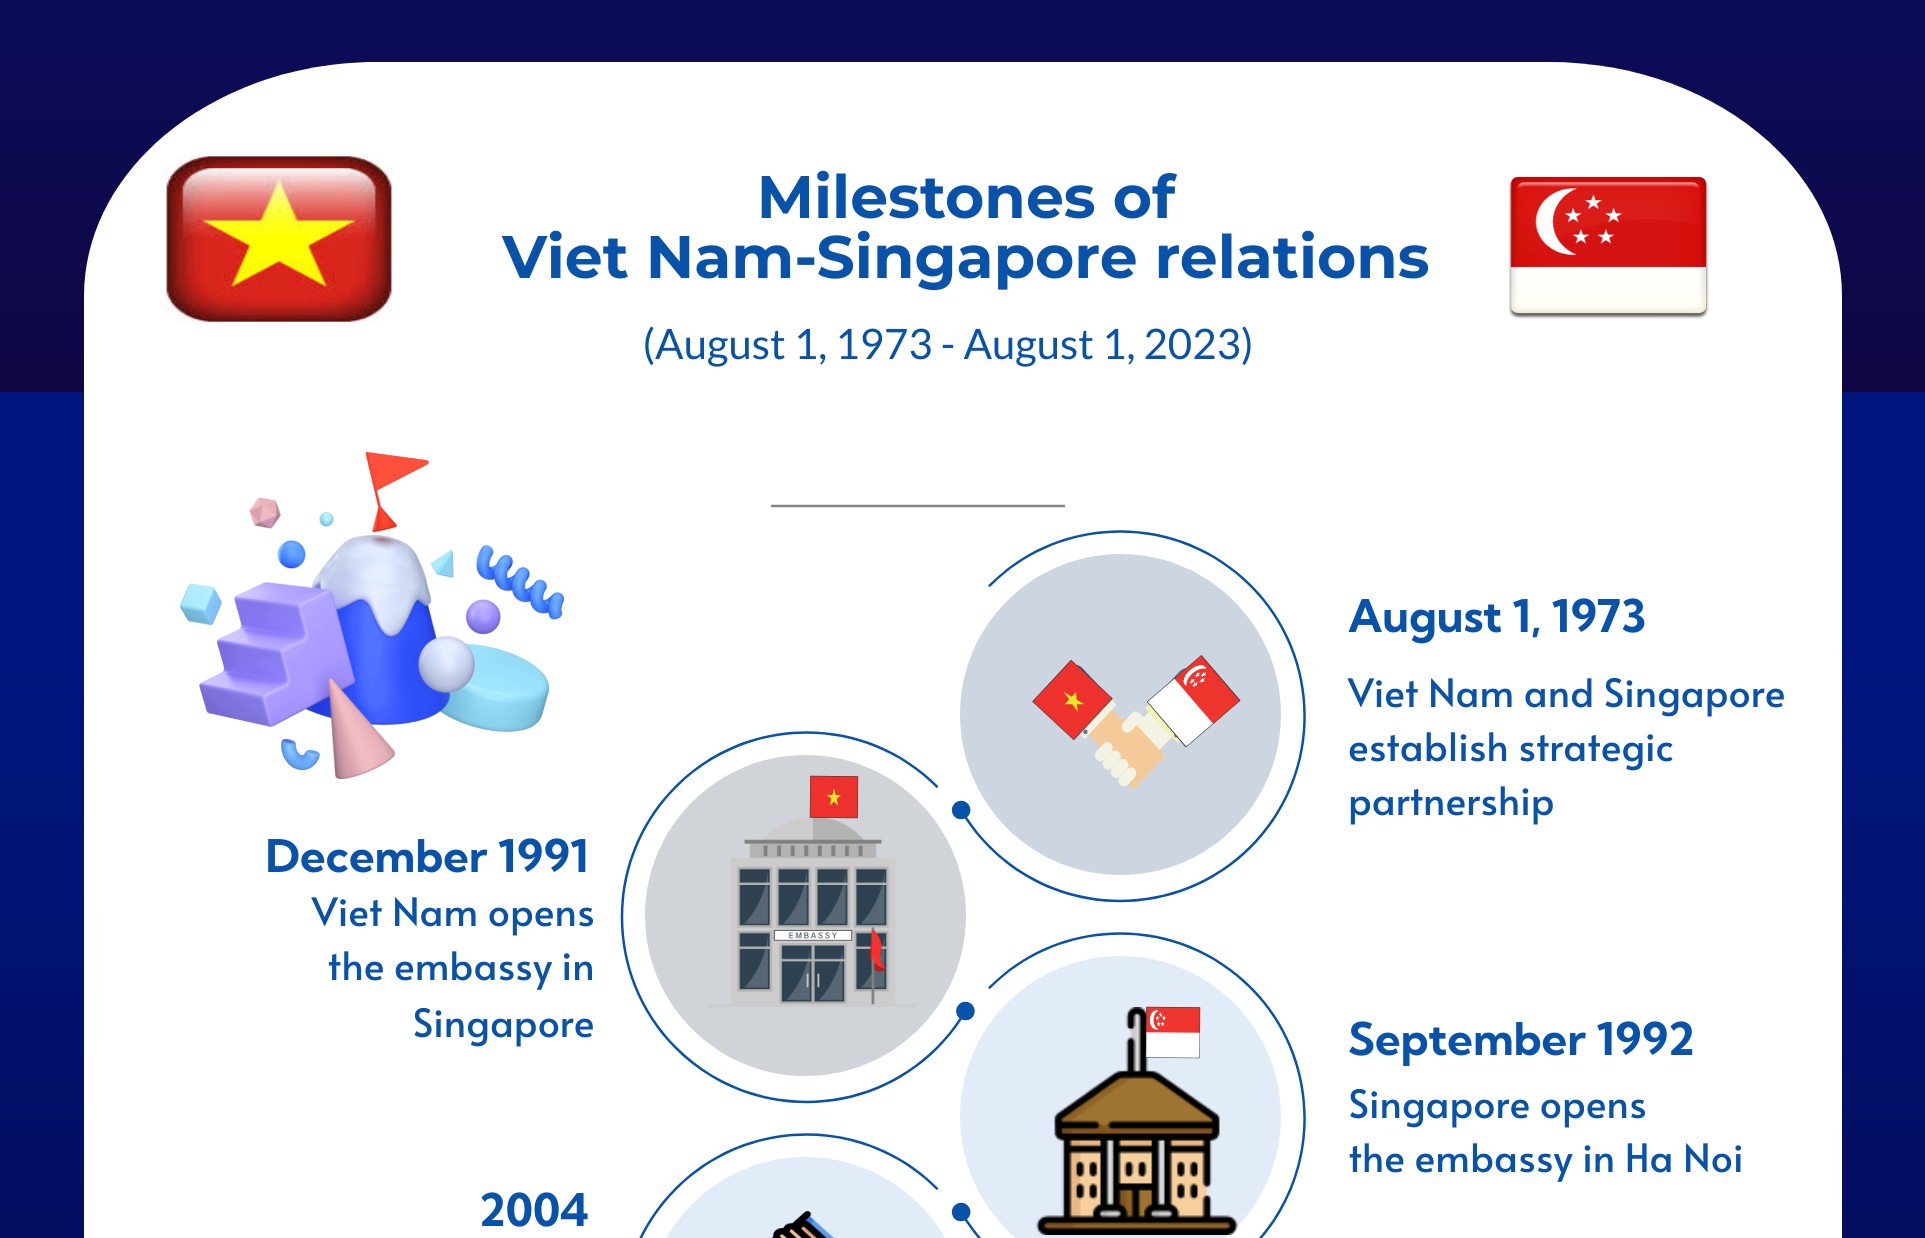 Milestones of Viet Nam-Singapore relations